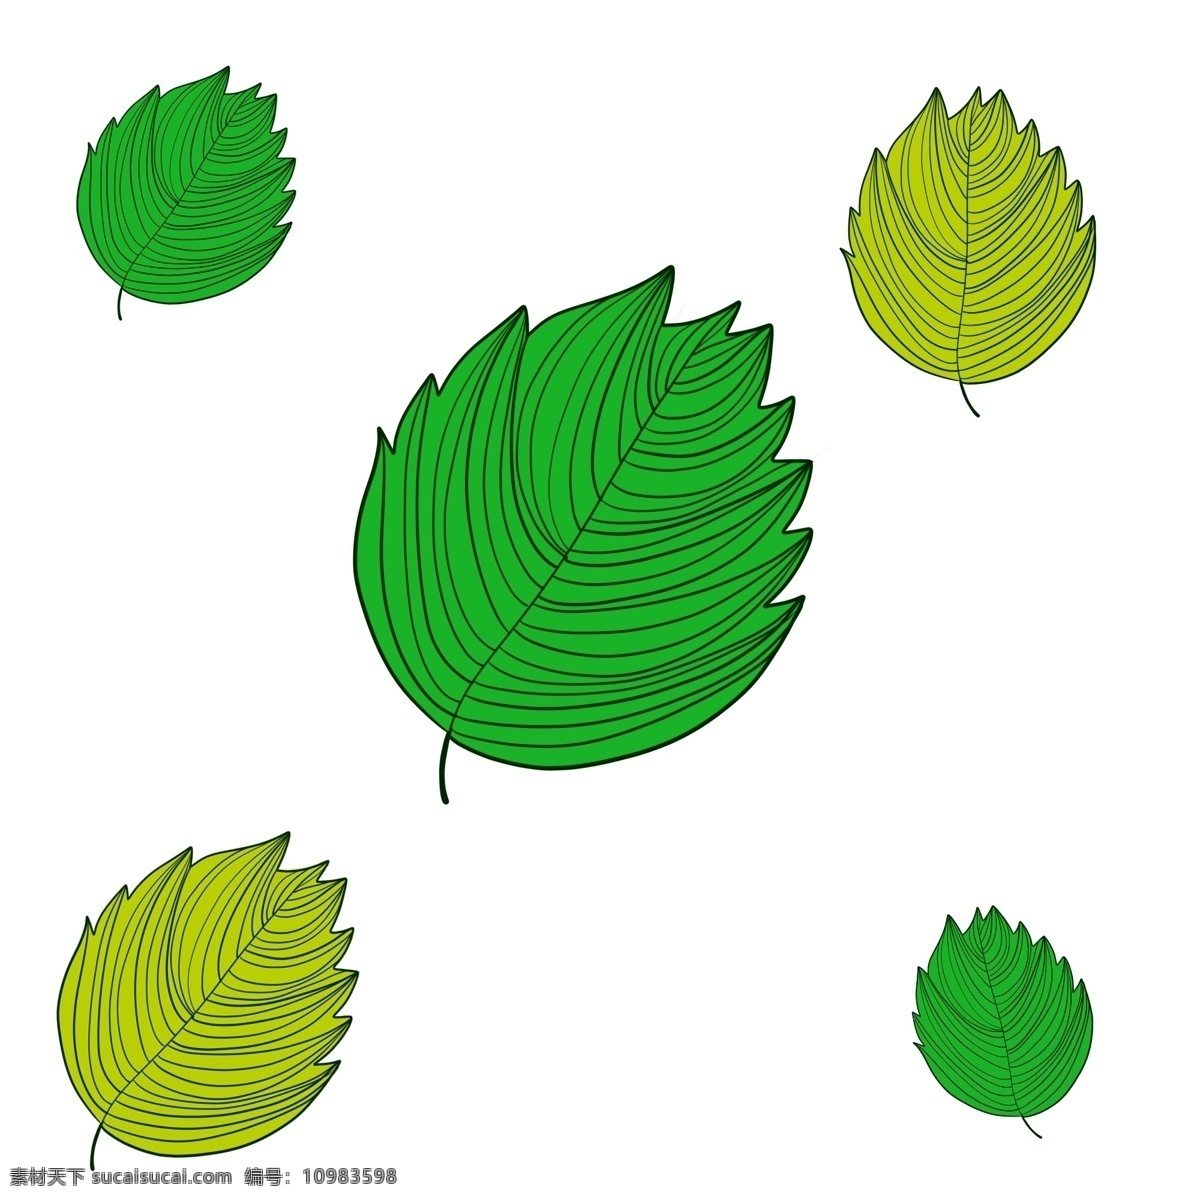 条纹 绿色植物 叶子 灌木丛 春天 栖息 百草丛生 单片叶子 植物 装饰 贴画 条纹叶子 品种